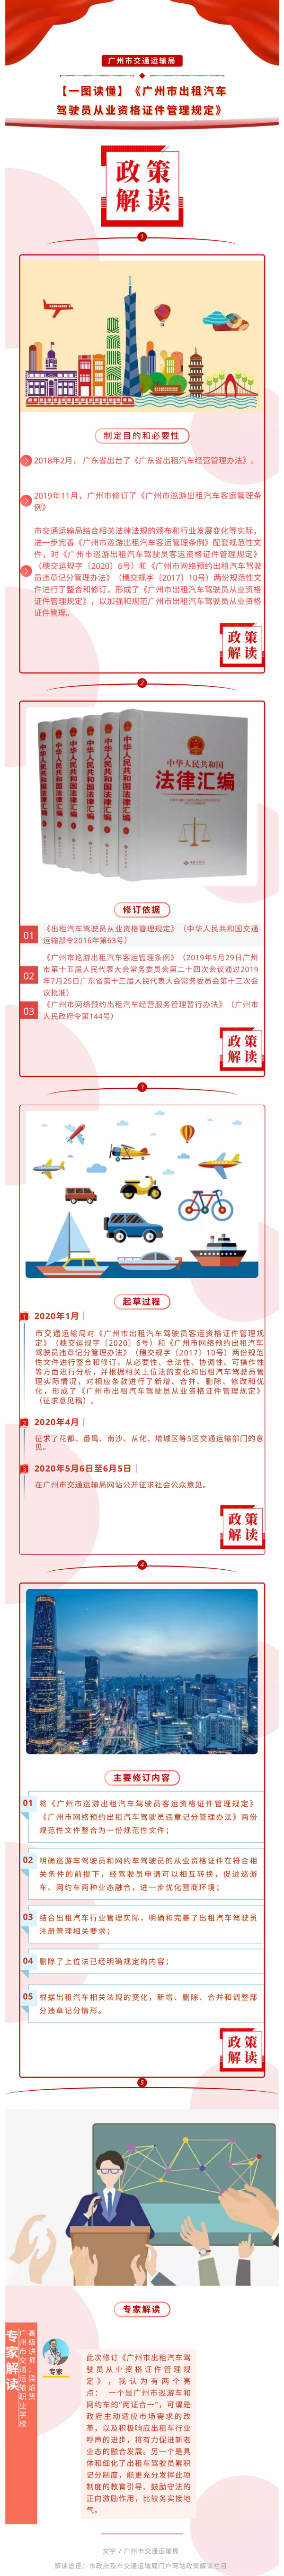 《广州市出租汽车驾驶员从业资格证件管理规定》政策解读材料（图文解读）pdf-1.jpg